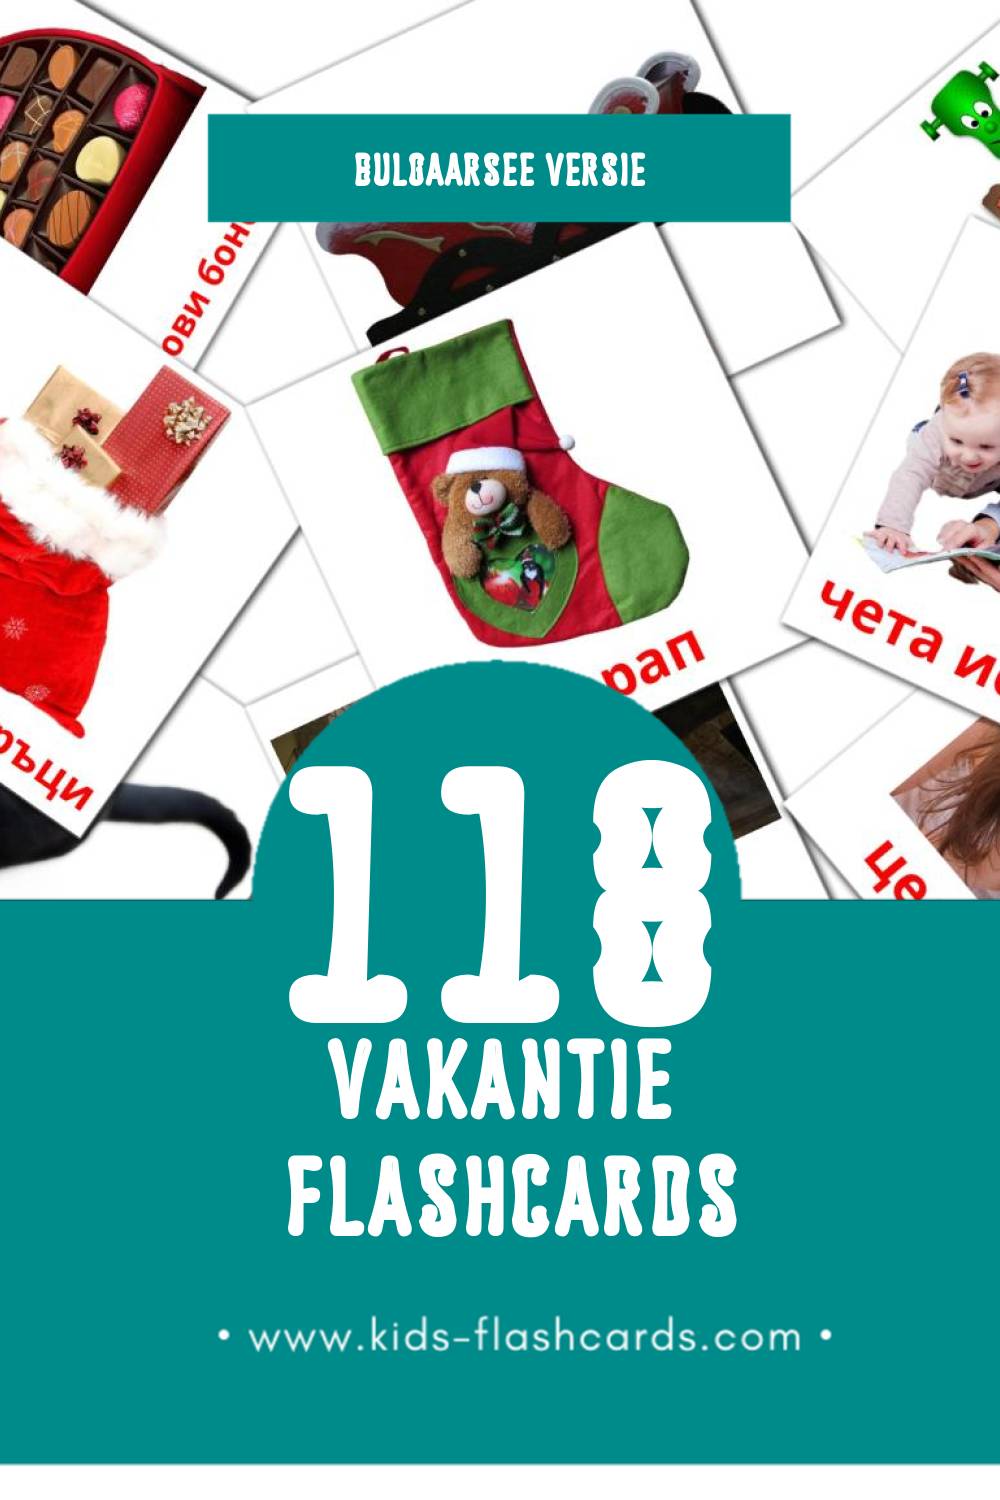 Visuele Ваканция Flashcards voor Kleuters (118 kaarten in het Bulgaarse)